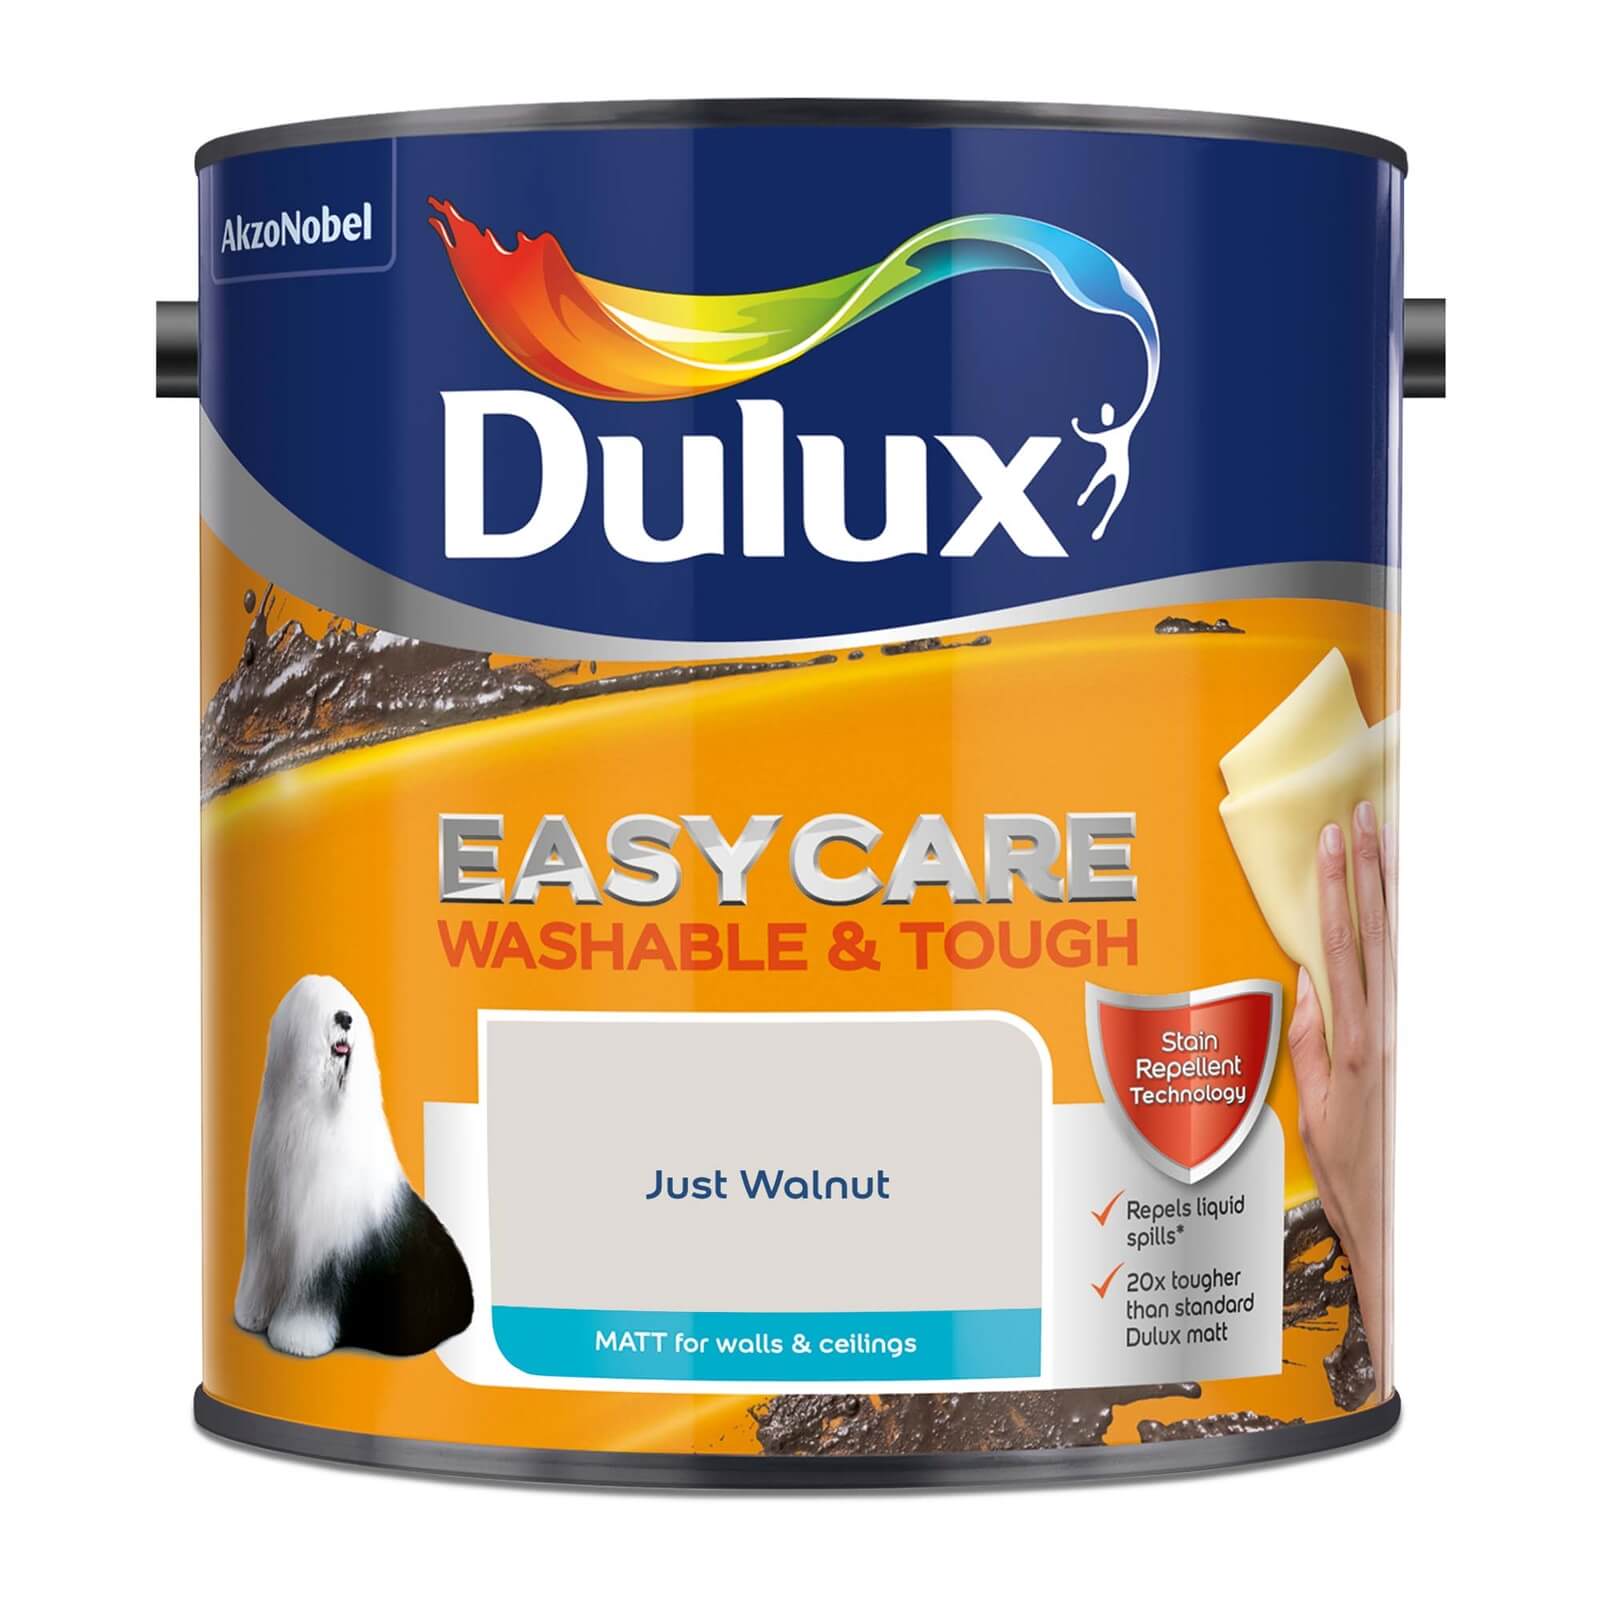 Dulux Easycare Washable & Tough Matt Paint Just Walnut - 2.5L